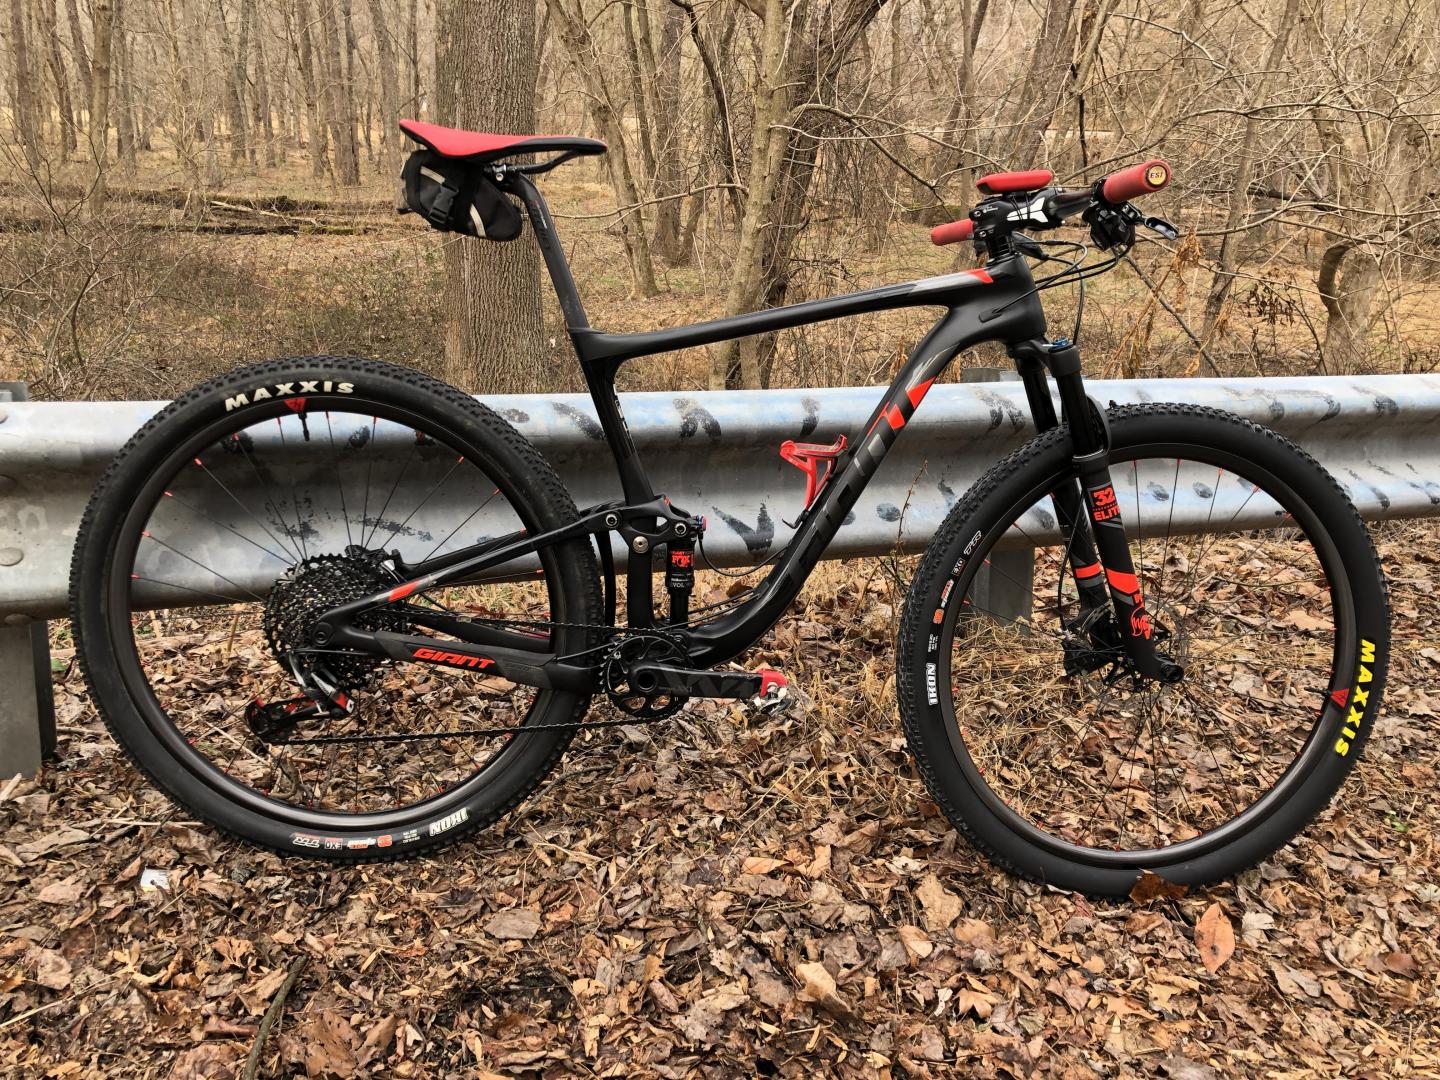 giant carbon fiber mountain bike